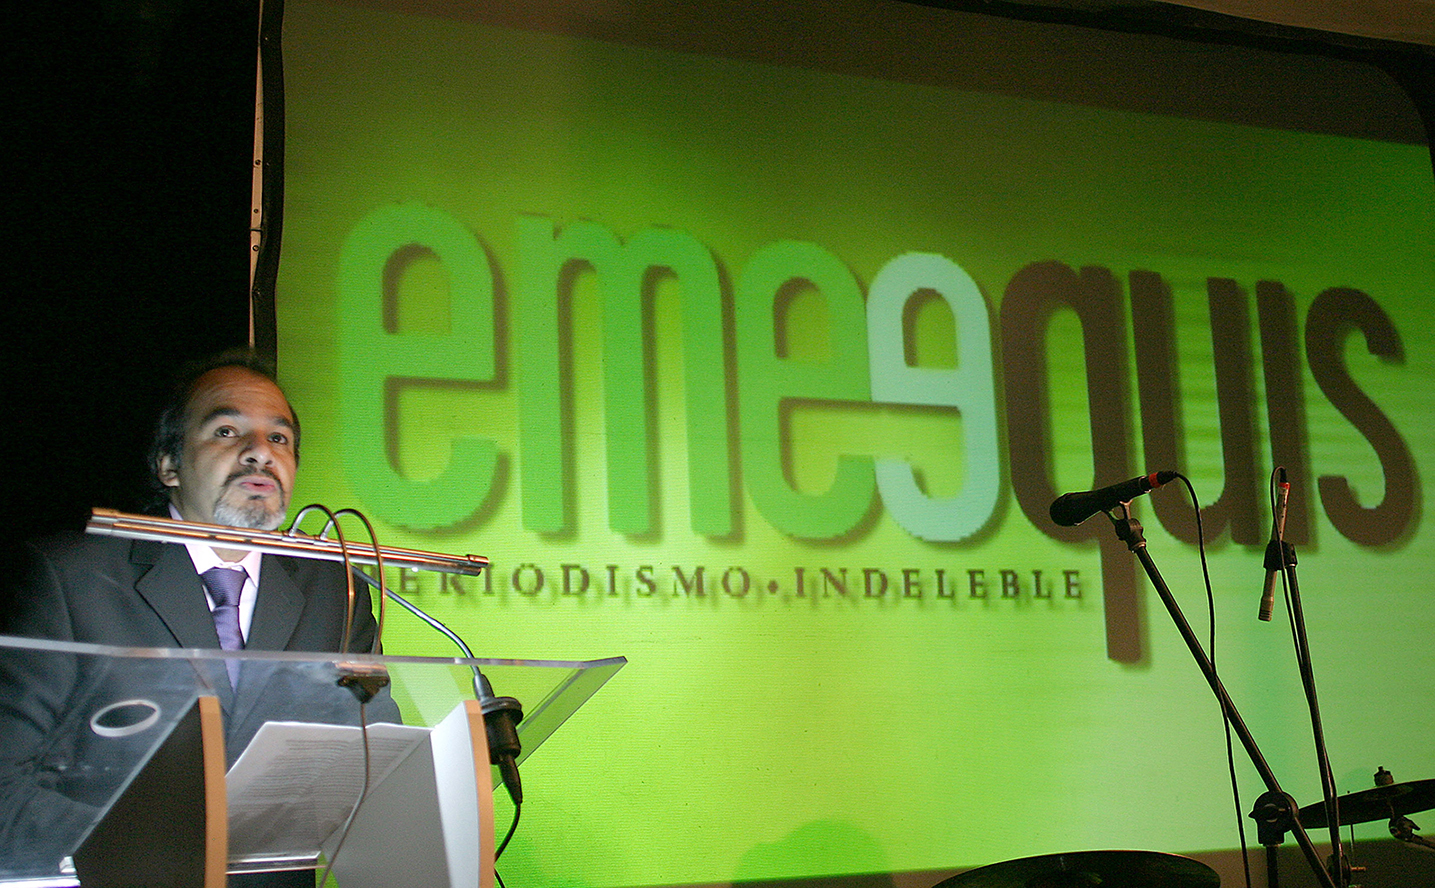 Ignacio Rodríguez Reyna, director de la revista Emeequis, durante una conferencia.